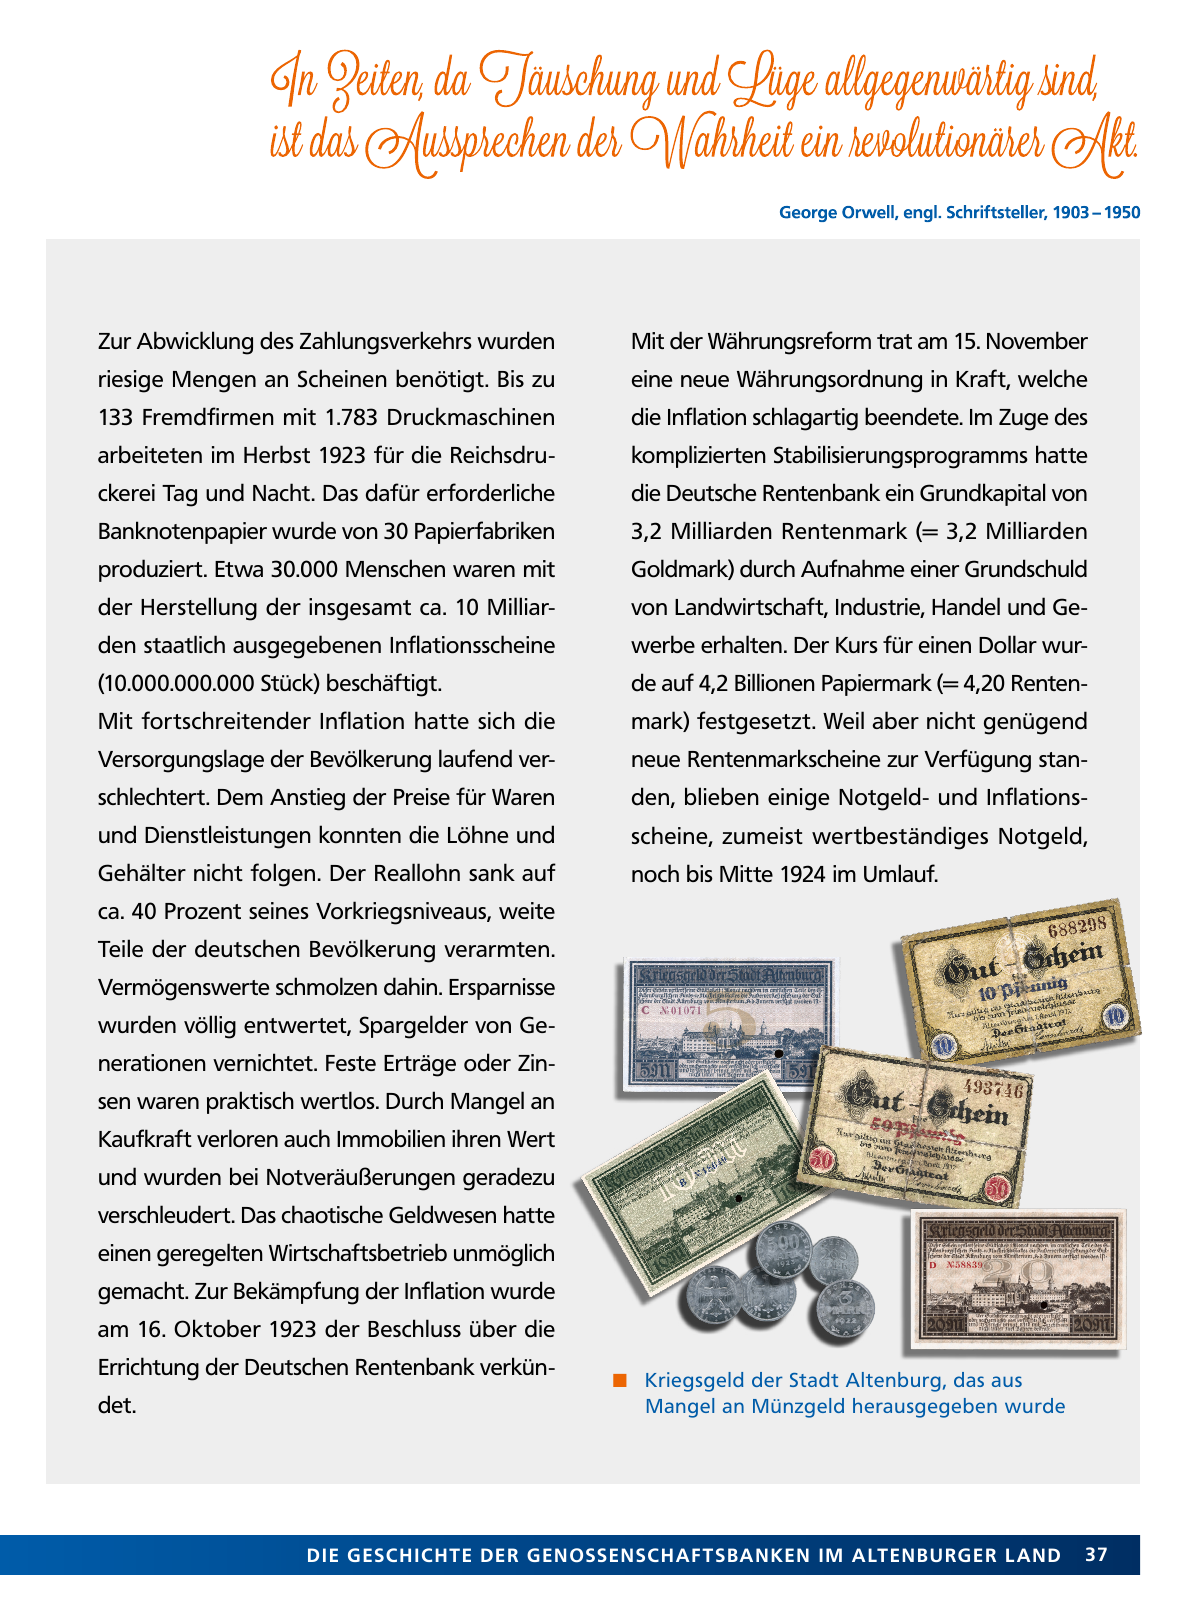 Vorschau Von der Idee, sich selbst zu helfen – 150 Jahre genossenschaftliches Bankwesen im Altenburger Land Seite 37